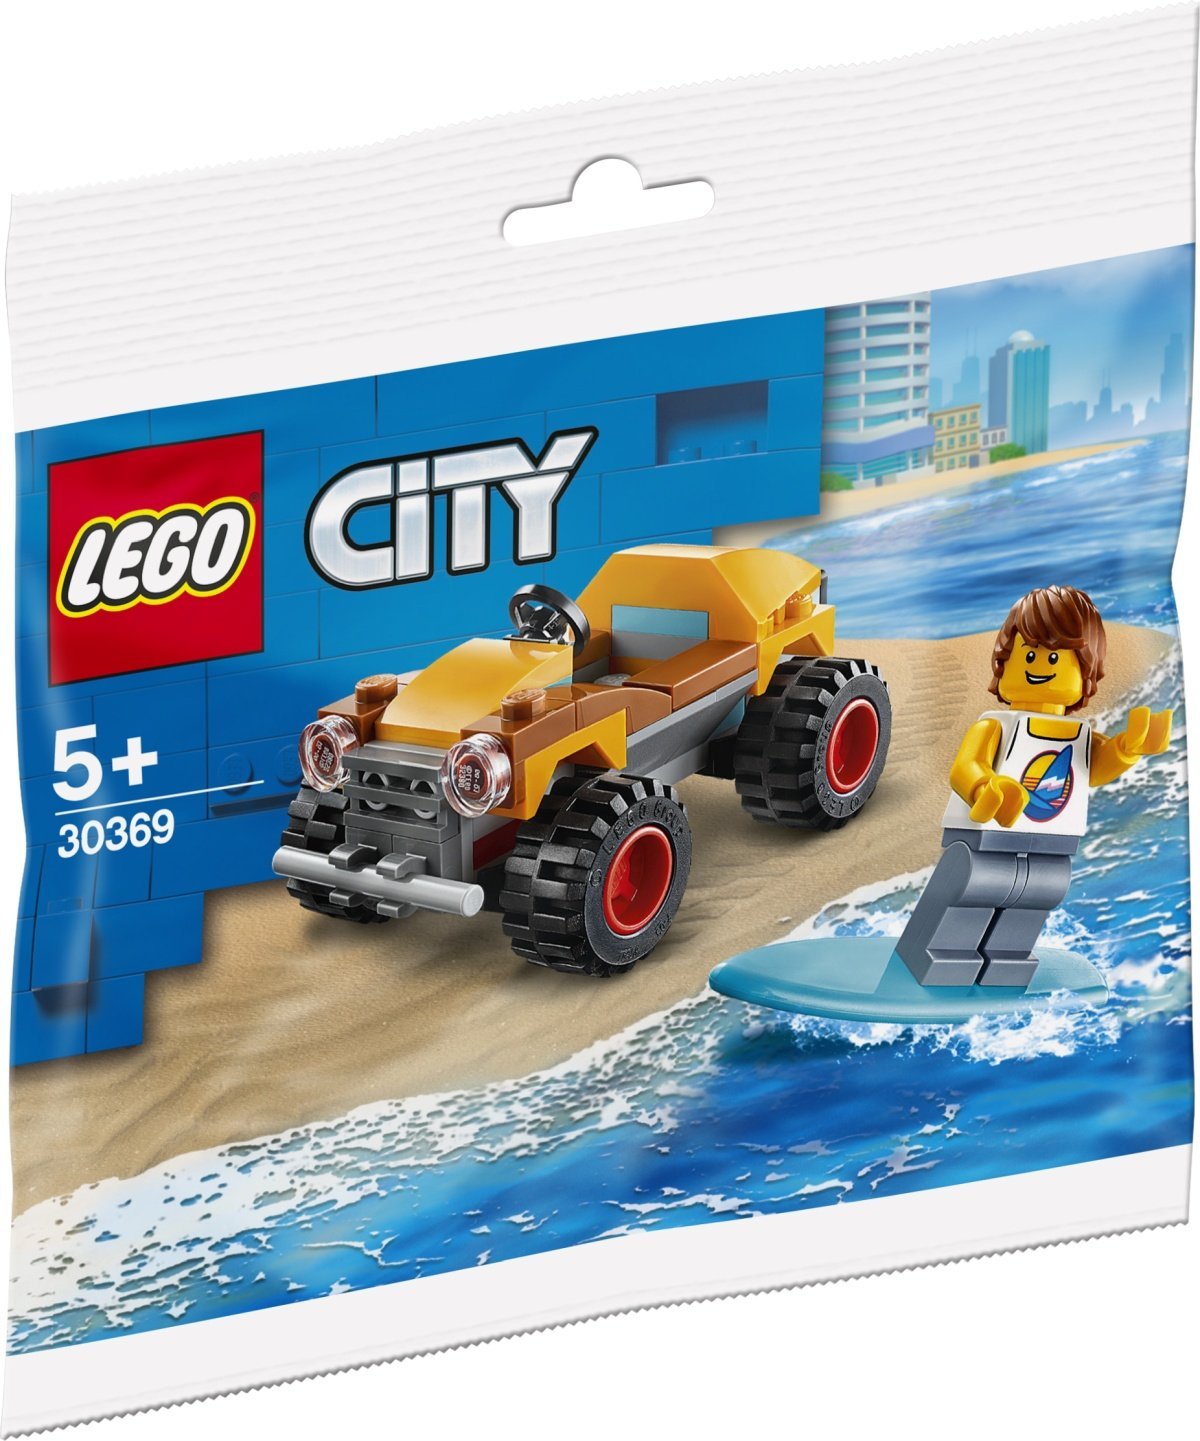 promotion lego city